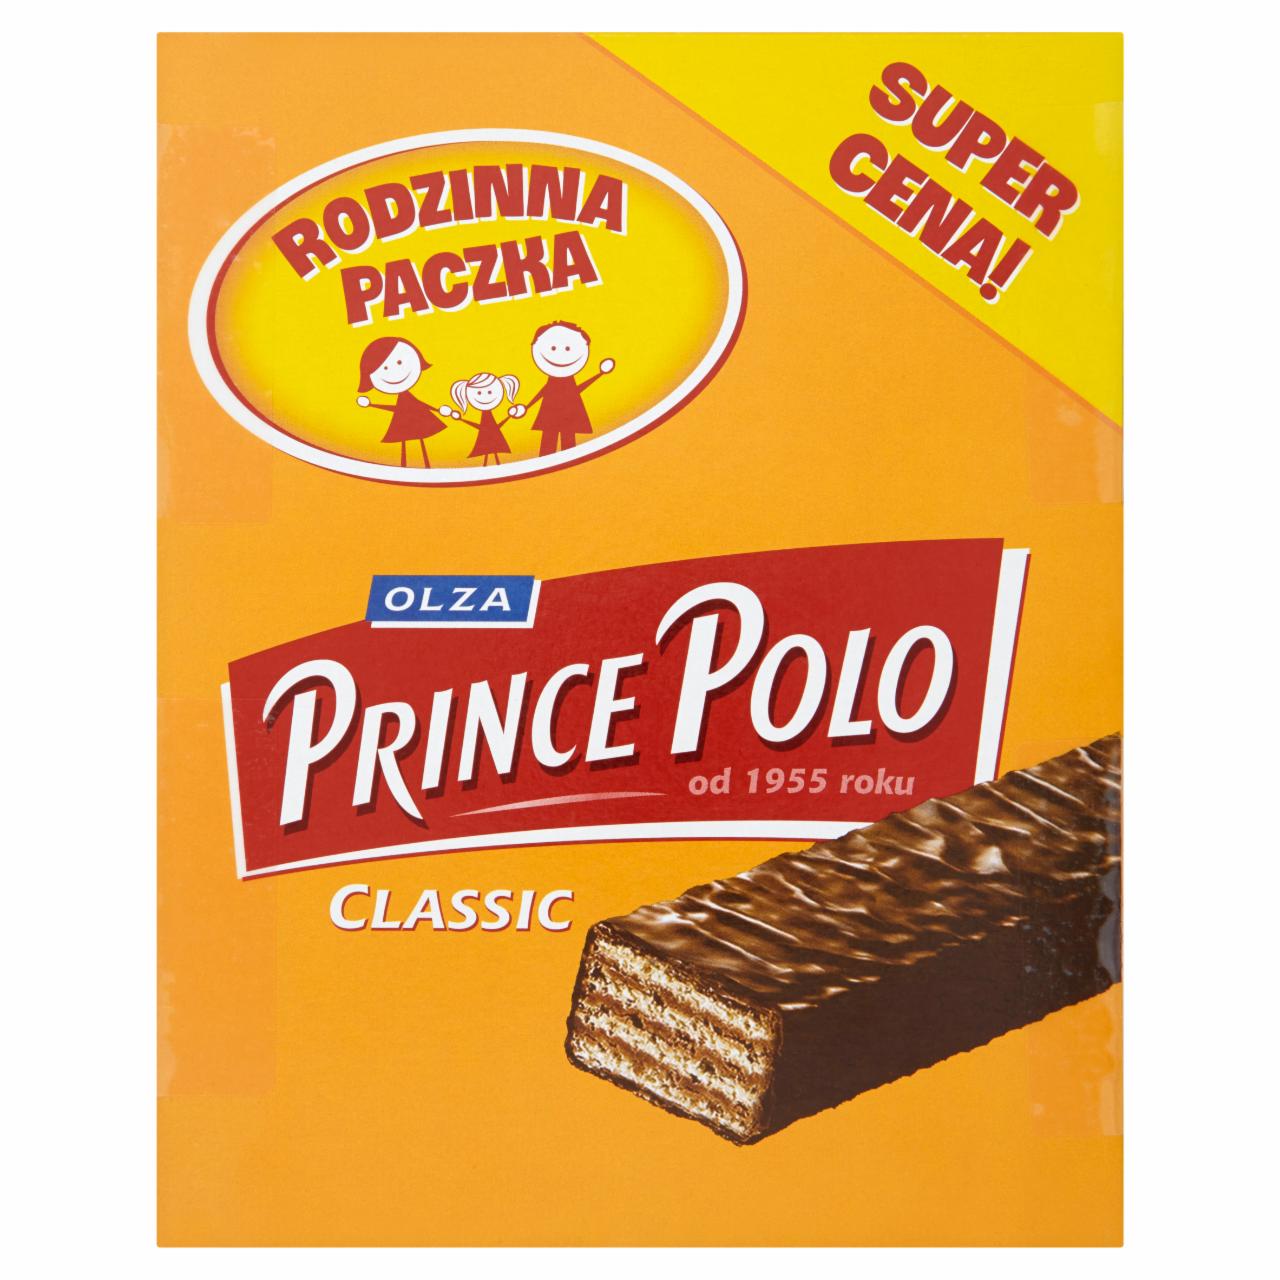 Zdjęcia - Olza Prince Polo Classic Kruche wafelki z kremem kakaowym oblane czekoladą 490 g (28 sztuk)